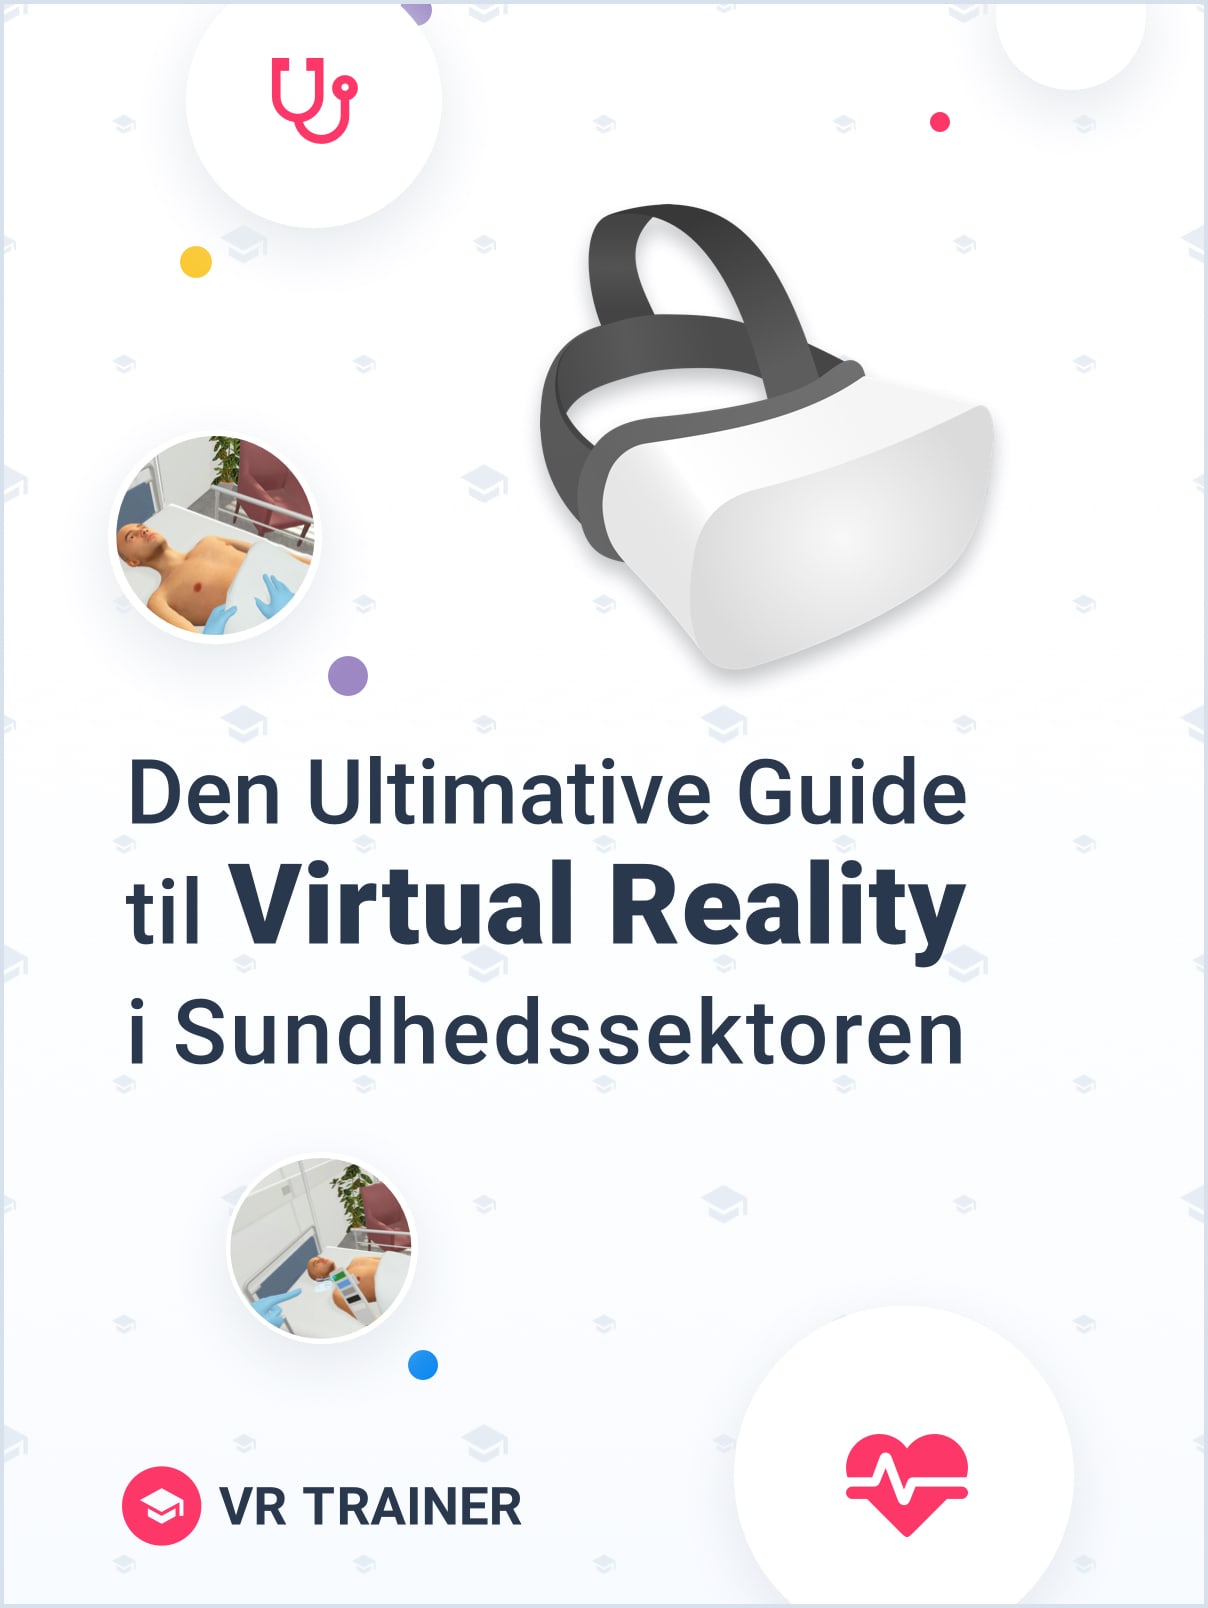 Den ultimative guide til Virtual Reality i Sundhedssektoren